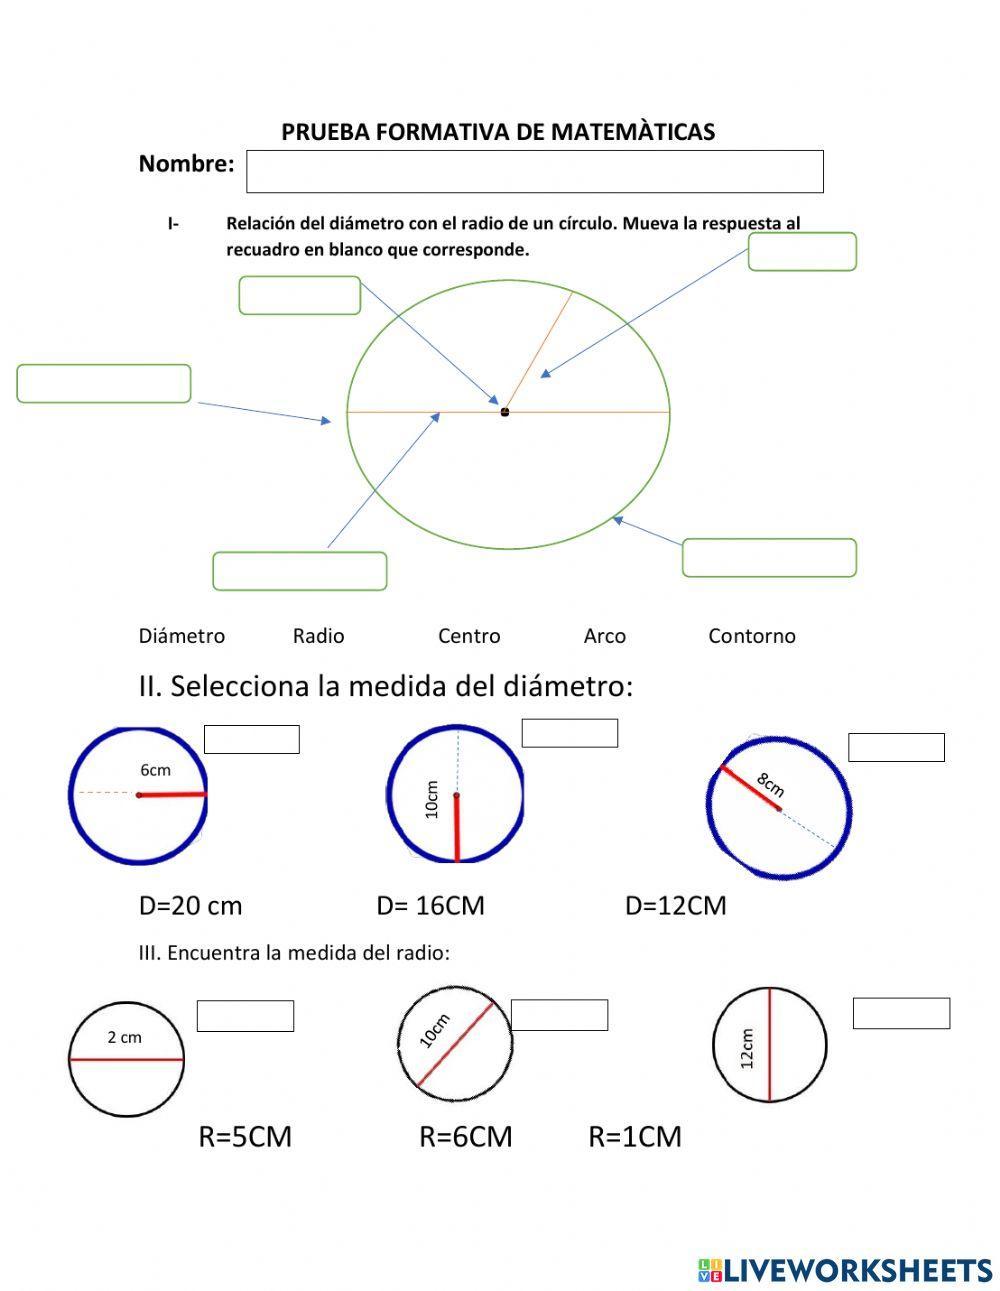 Relaciòn del diametro con el radio de un circulo